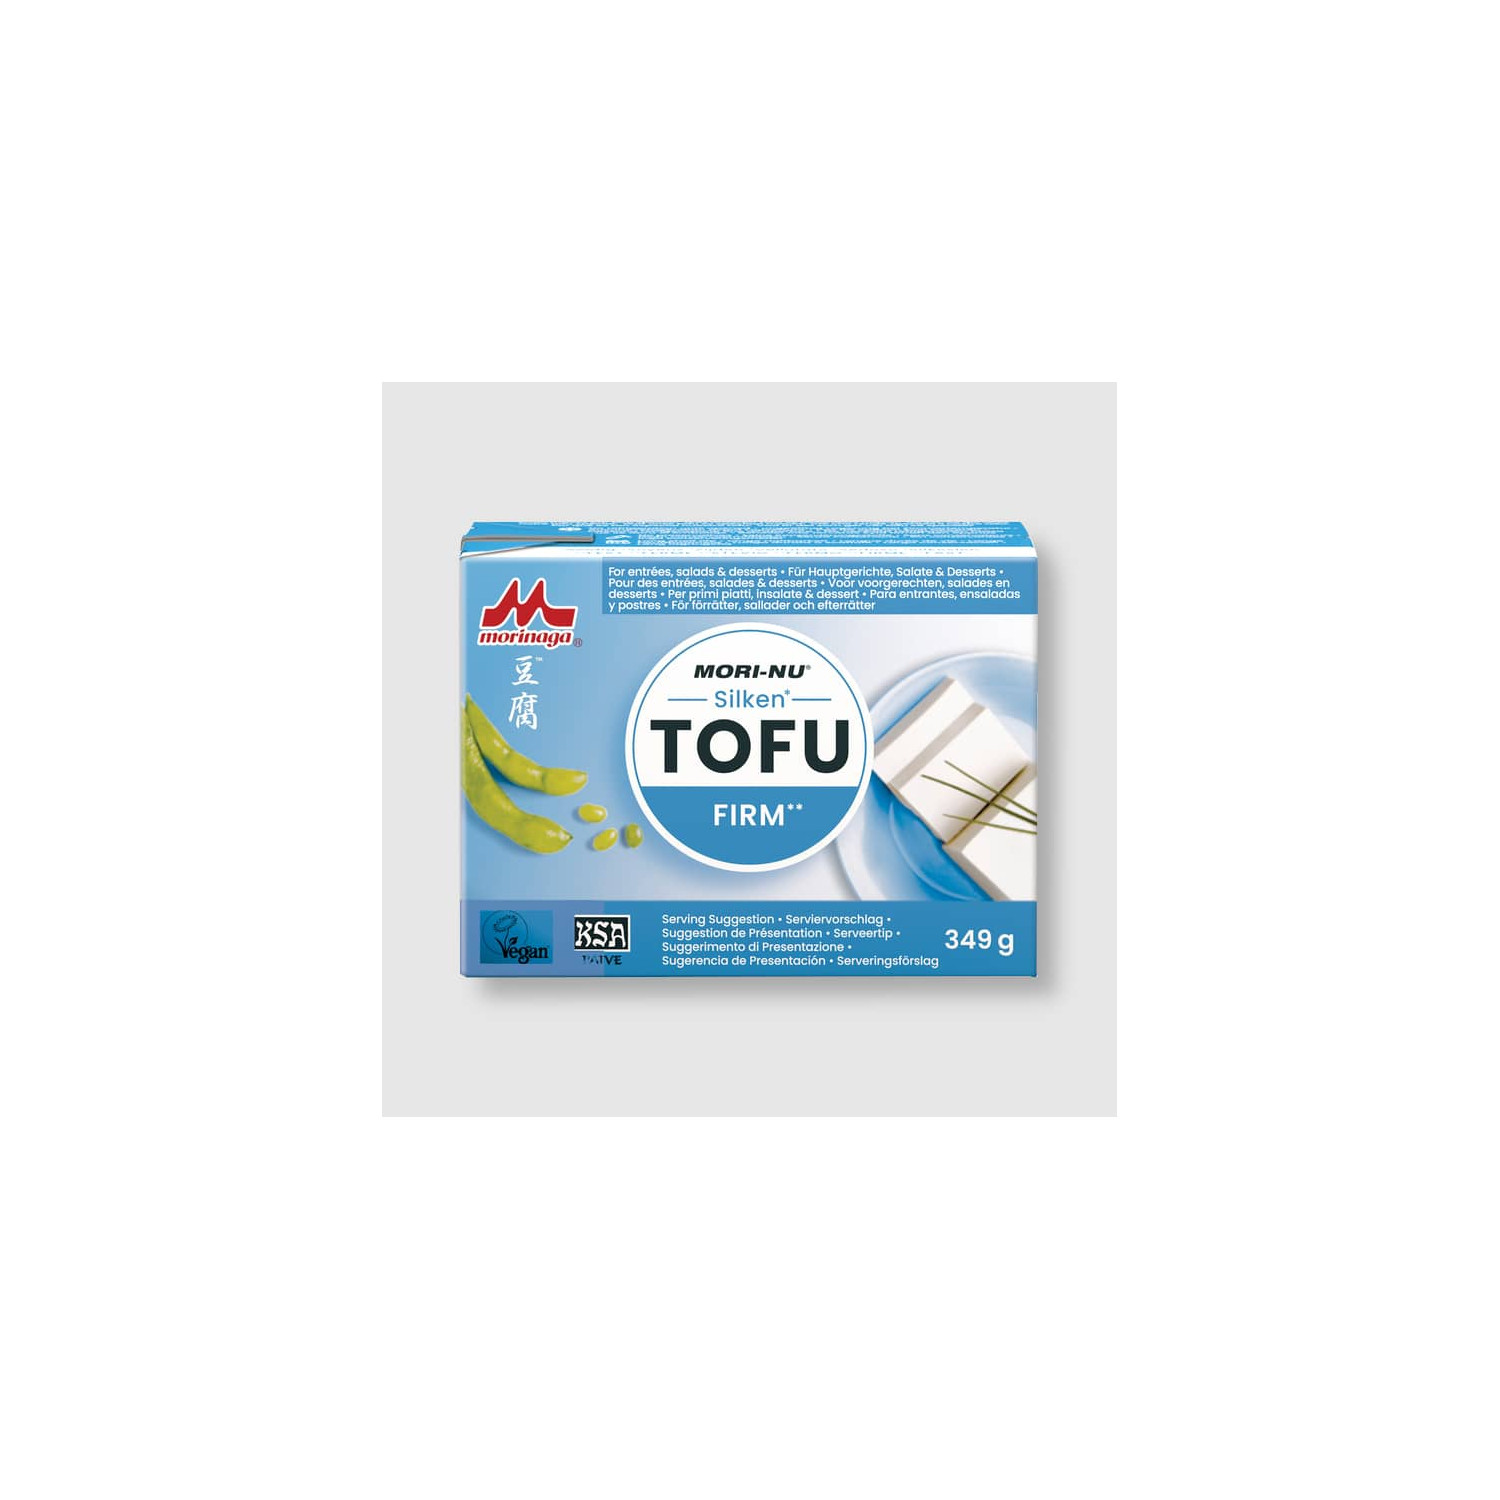 Acheter tofu